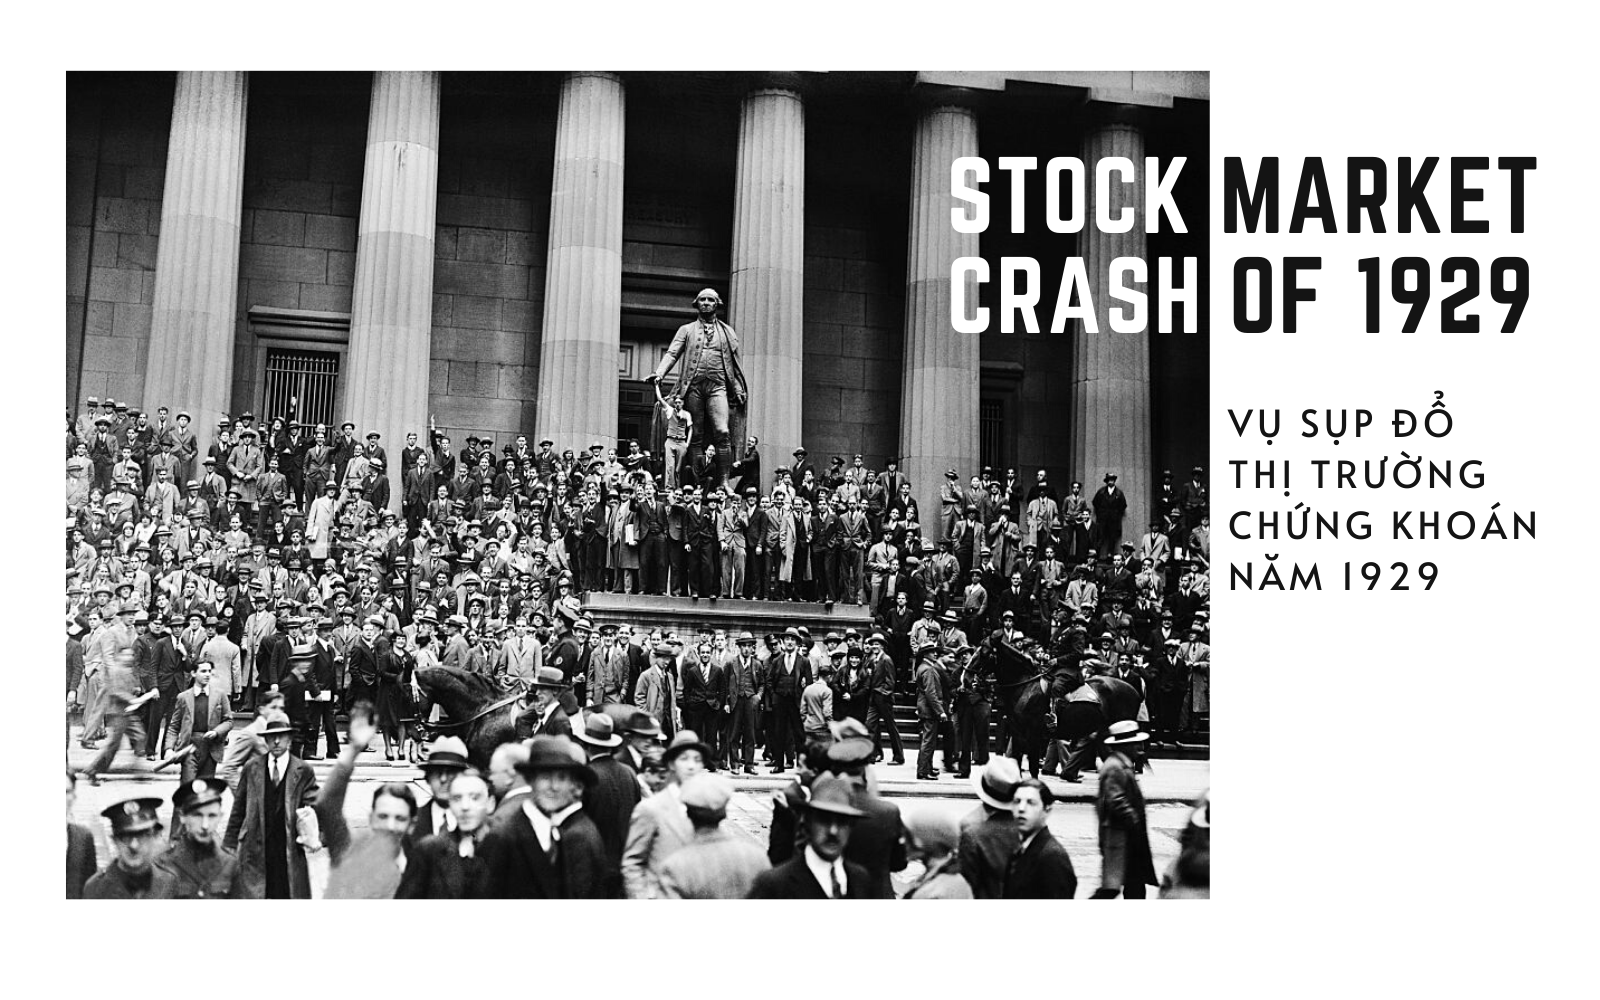 Sụp đổ thị trường chứng khoán vào năm 1929 